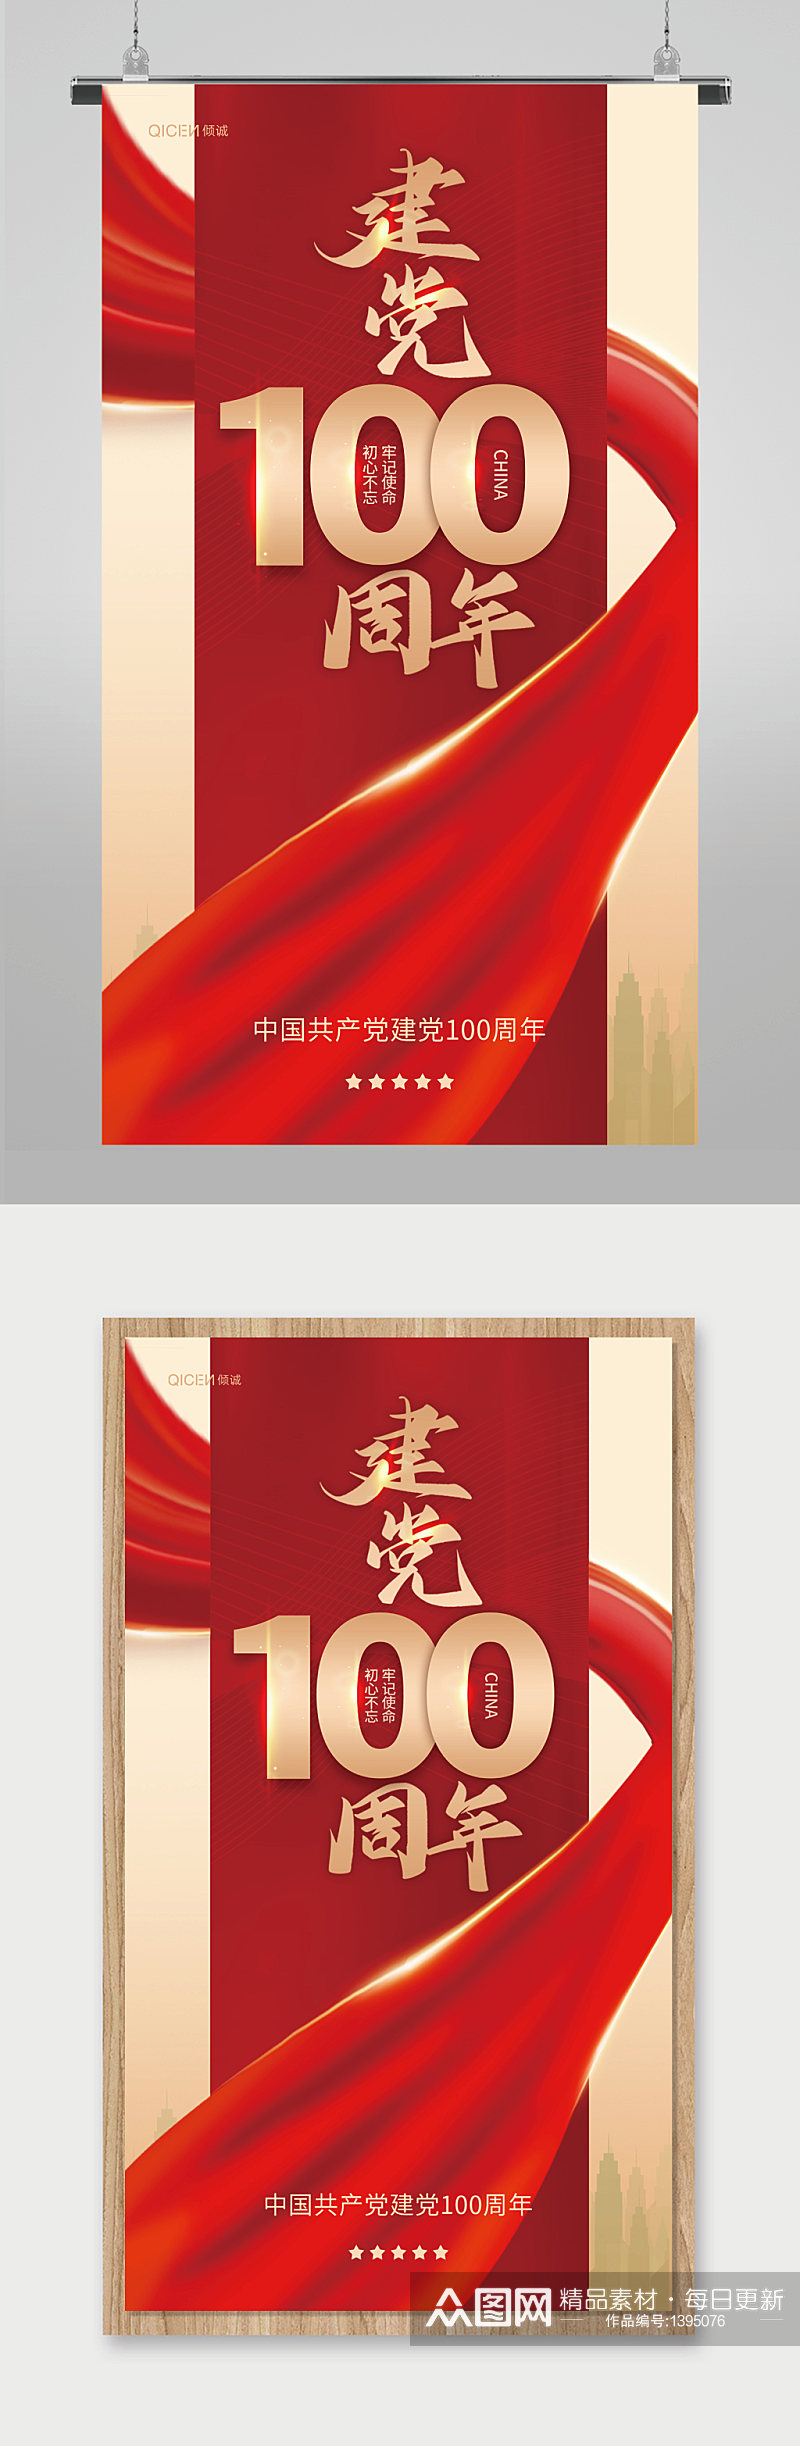 红色绸缎建党100周年爱国精神宣传海报素材